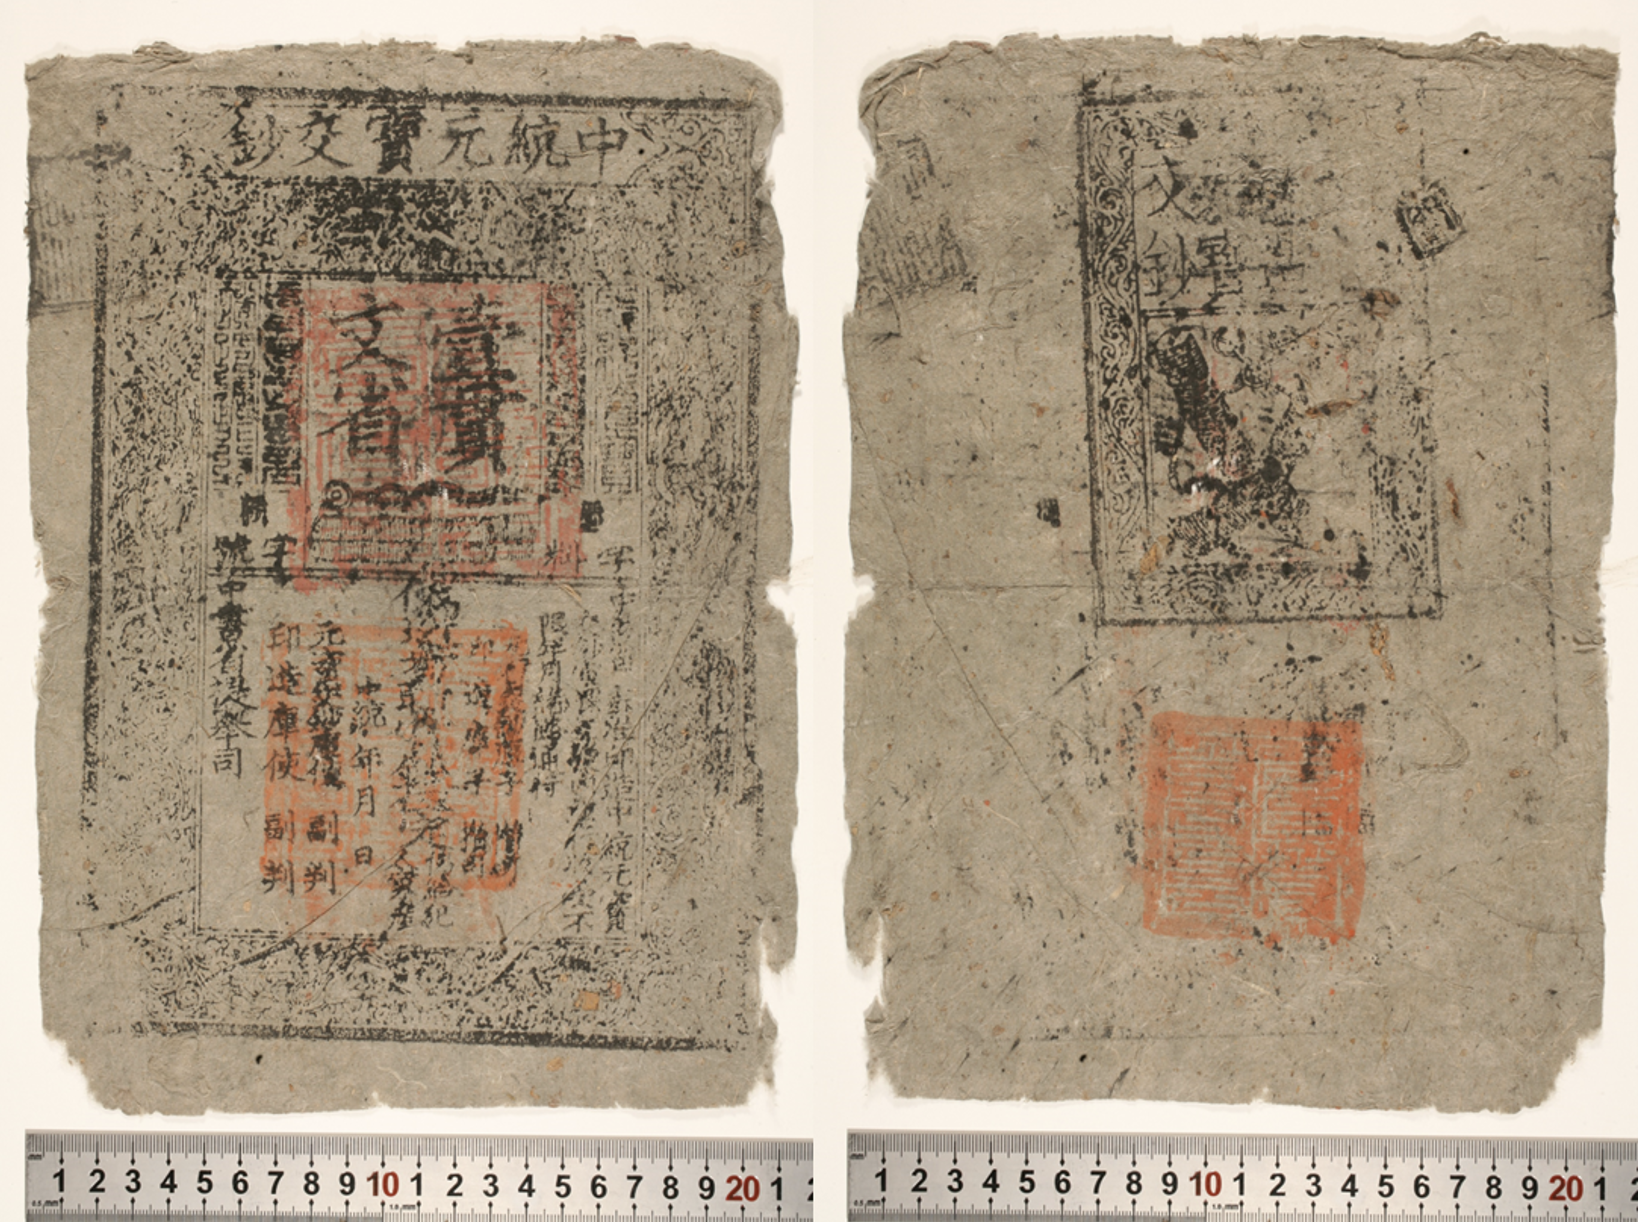 Figure 2 A 1 guan note zhongtong yuanbao jiaochao 中统交钞 issued by the Yuan